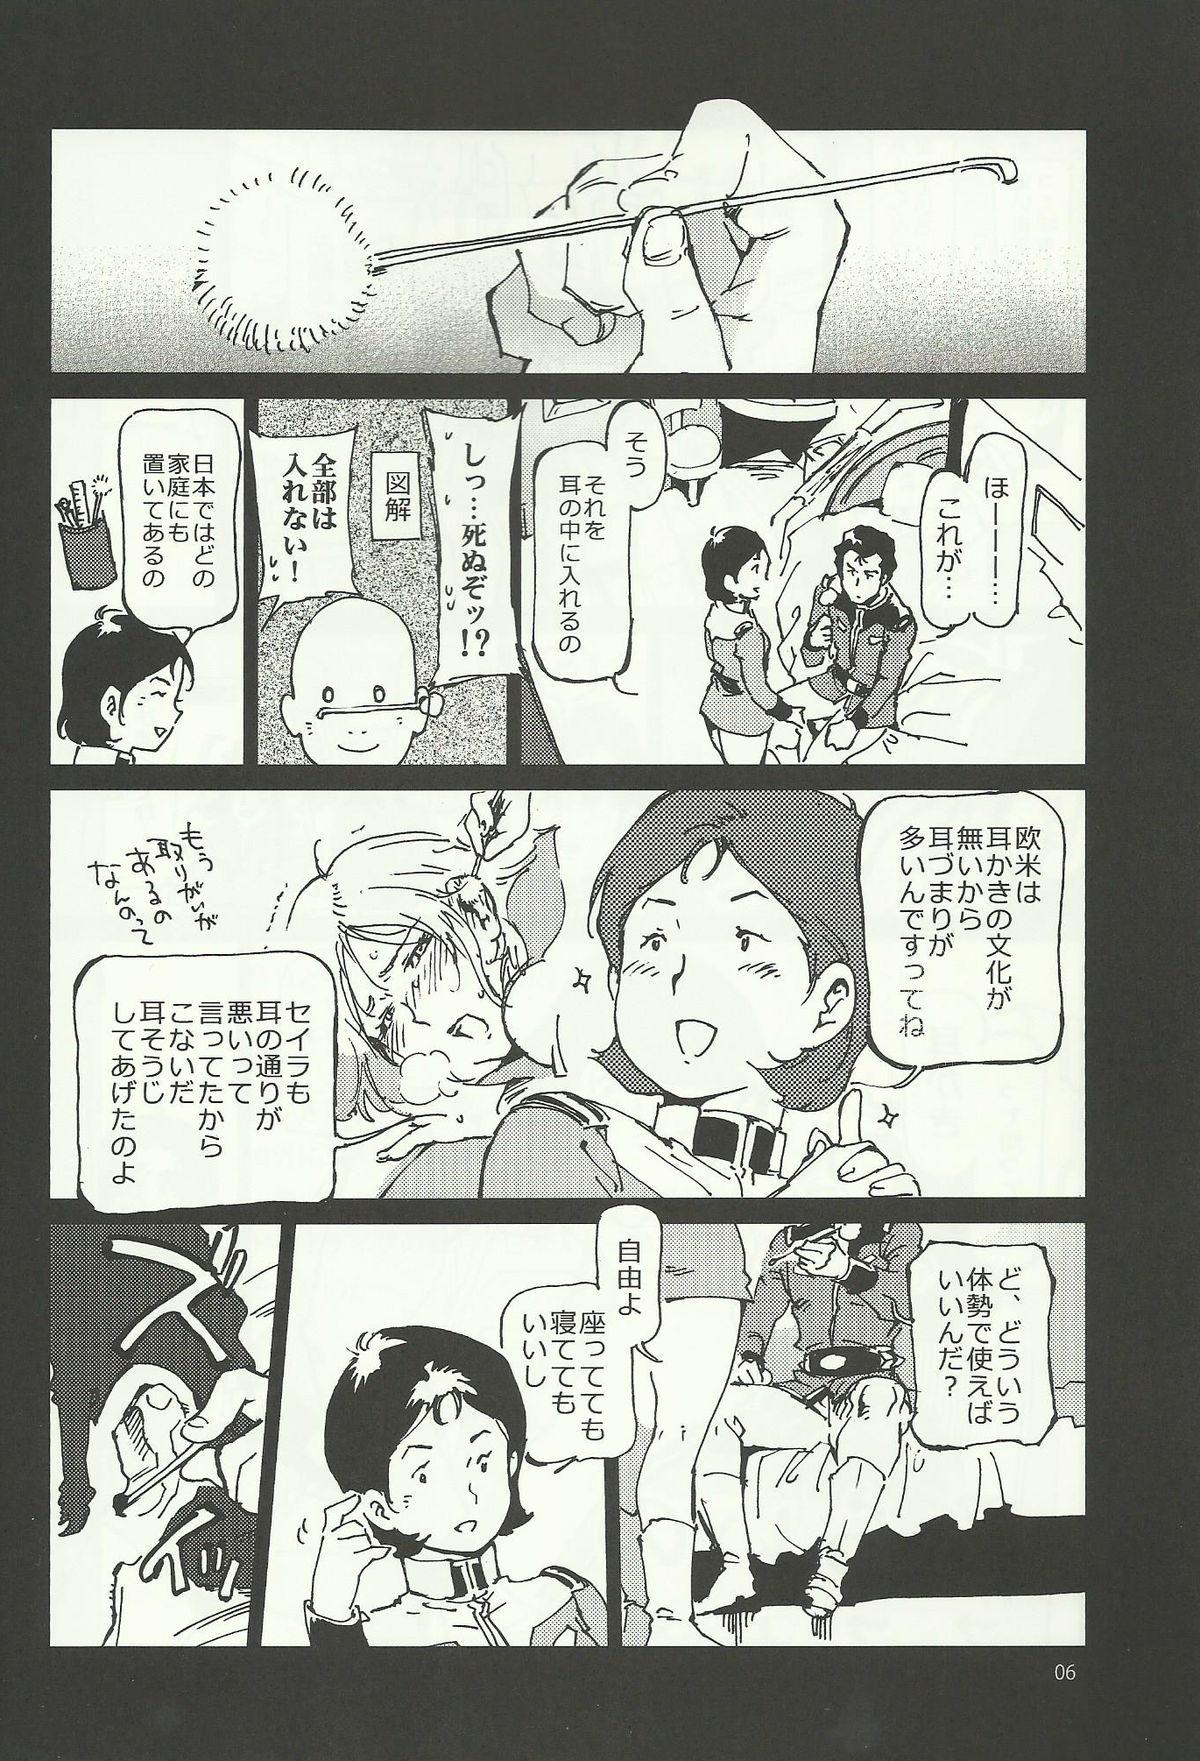 Lesbian Mirai no Mimikaki - Mobile suit gundam Amatuer Porn - Page 5